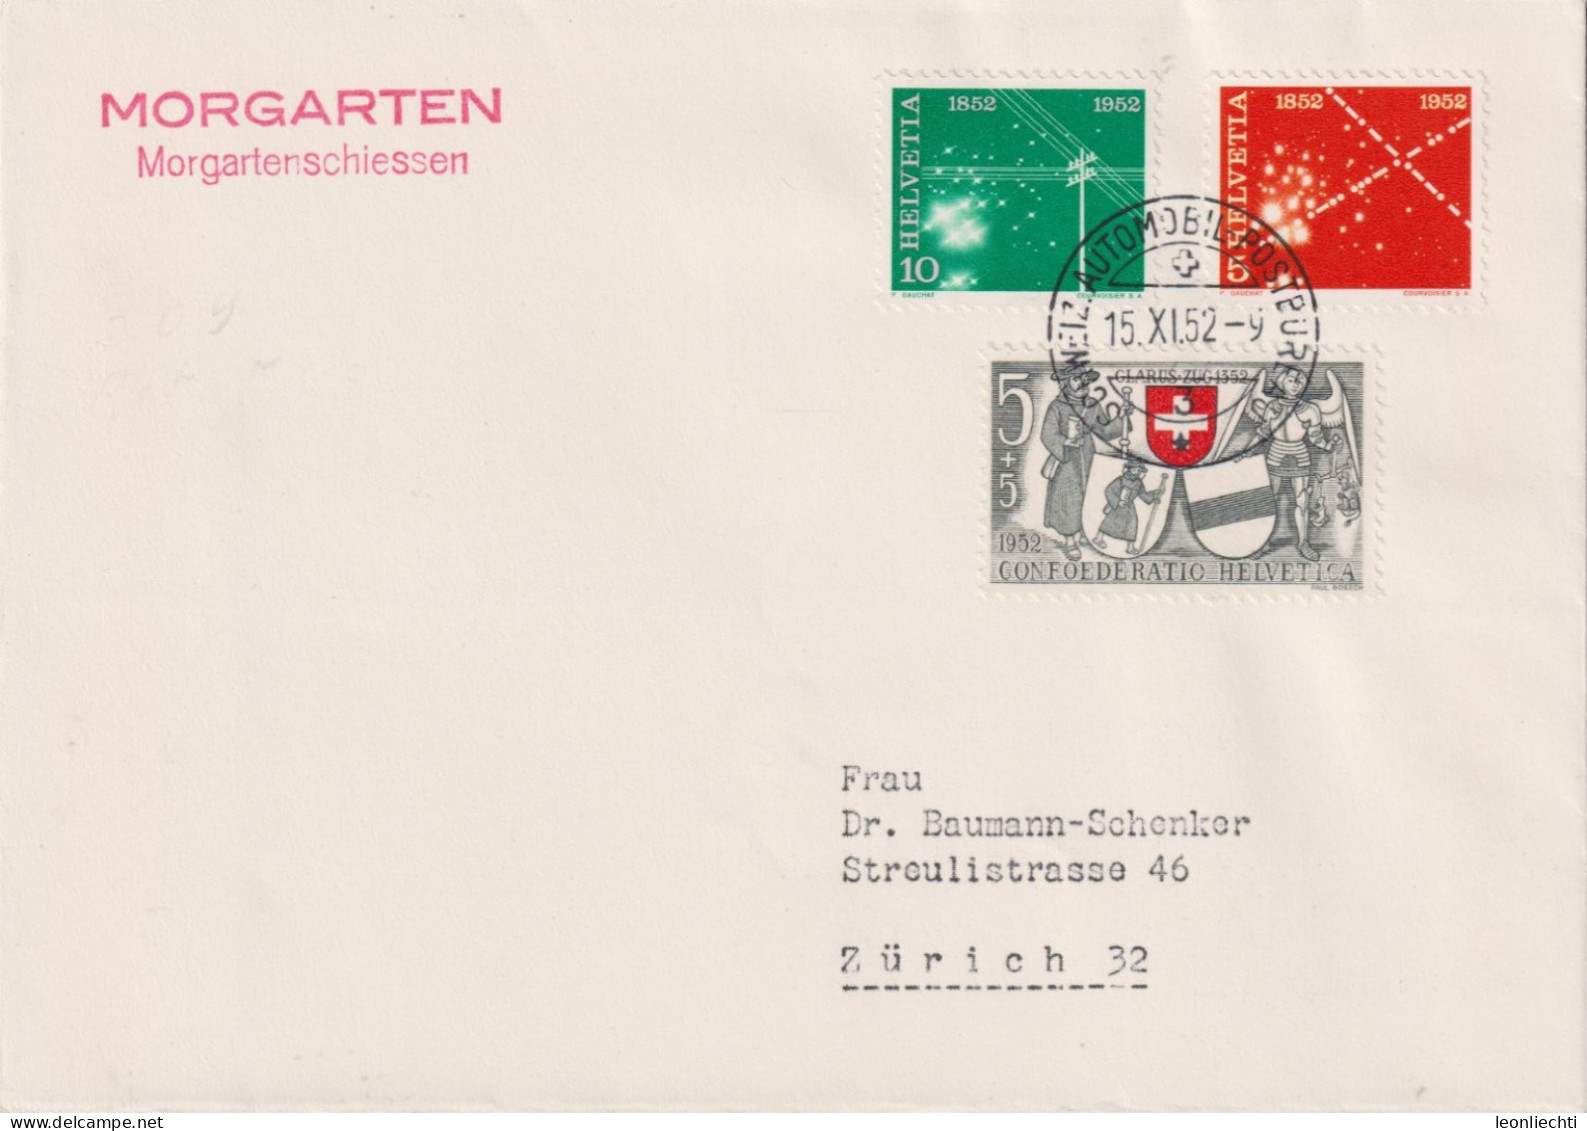 1952 Schweiz, Brief Zum:CH 309+310+B56, Mi:CH 566+567+571, MORGARTEN, Morgartenschiessen - Briefe U. Dokumente